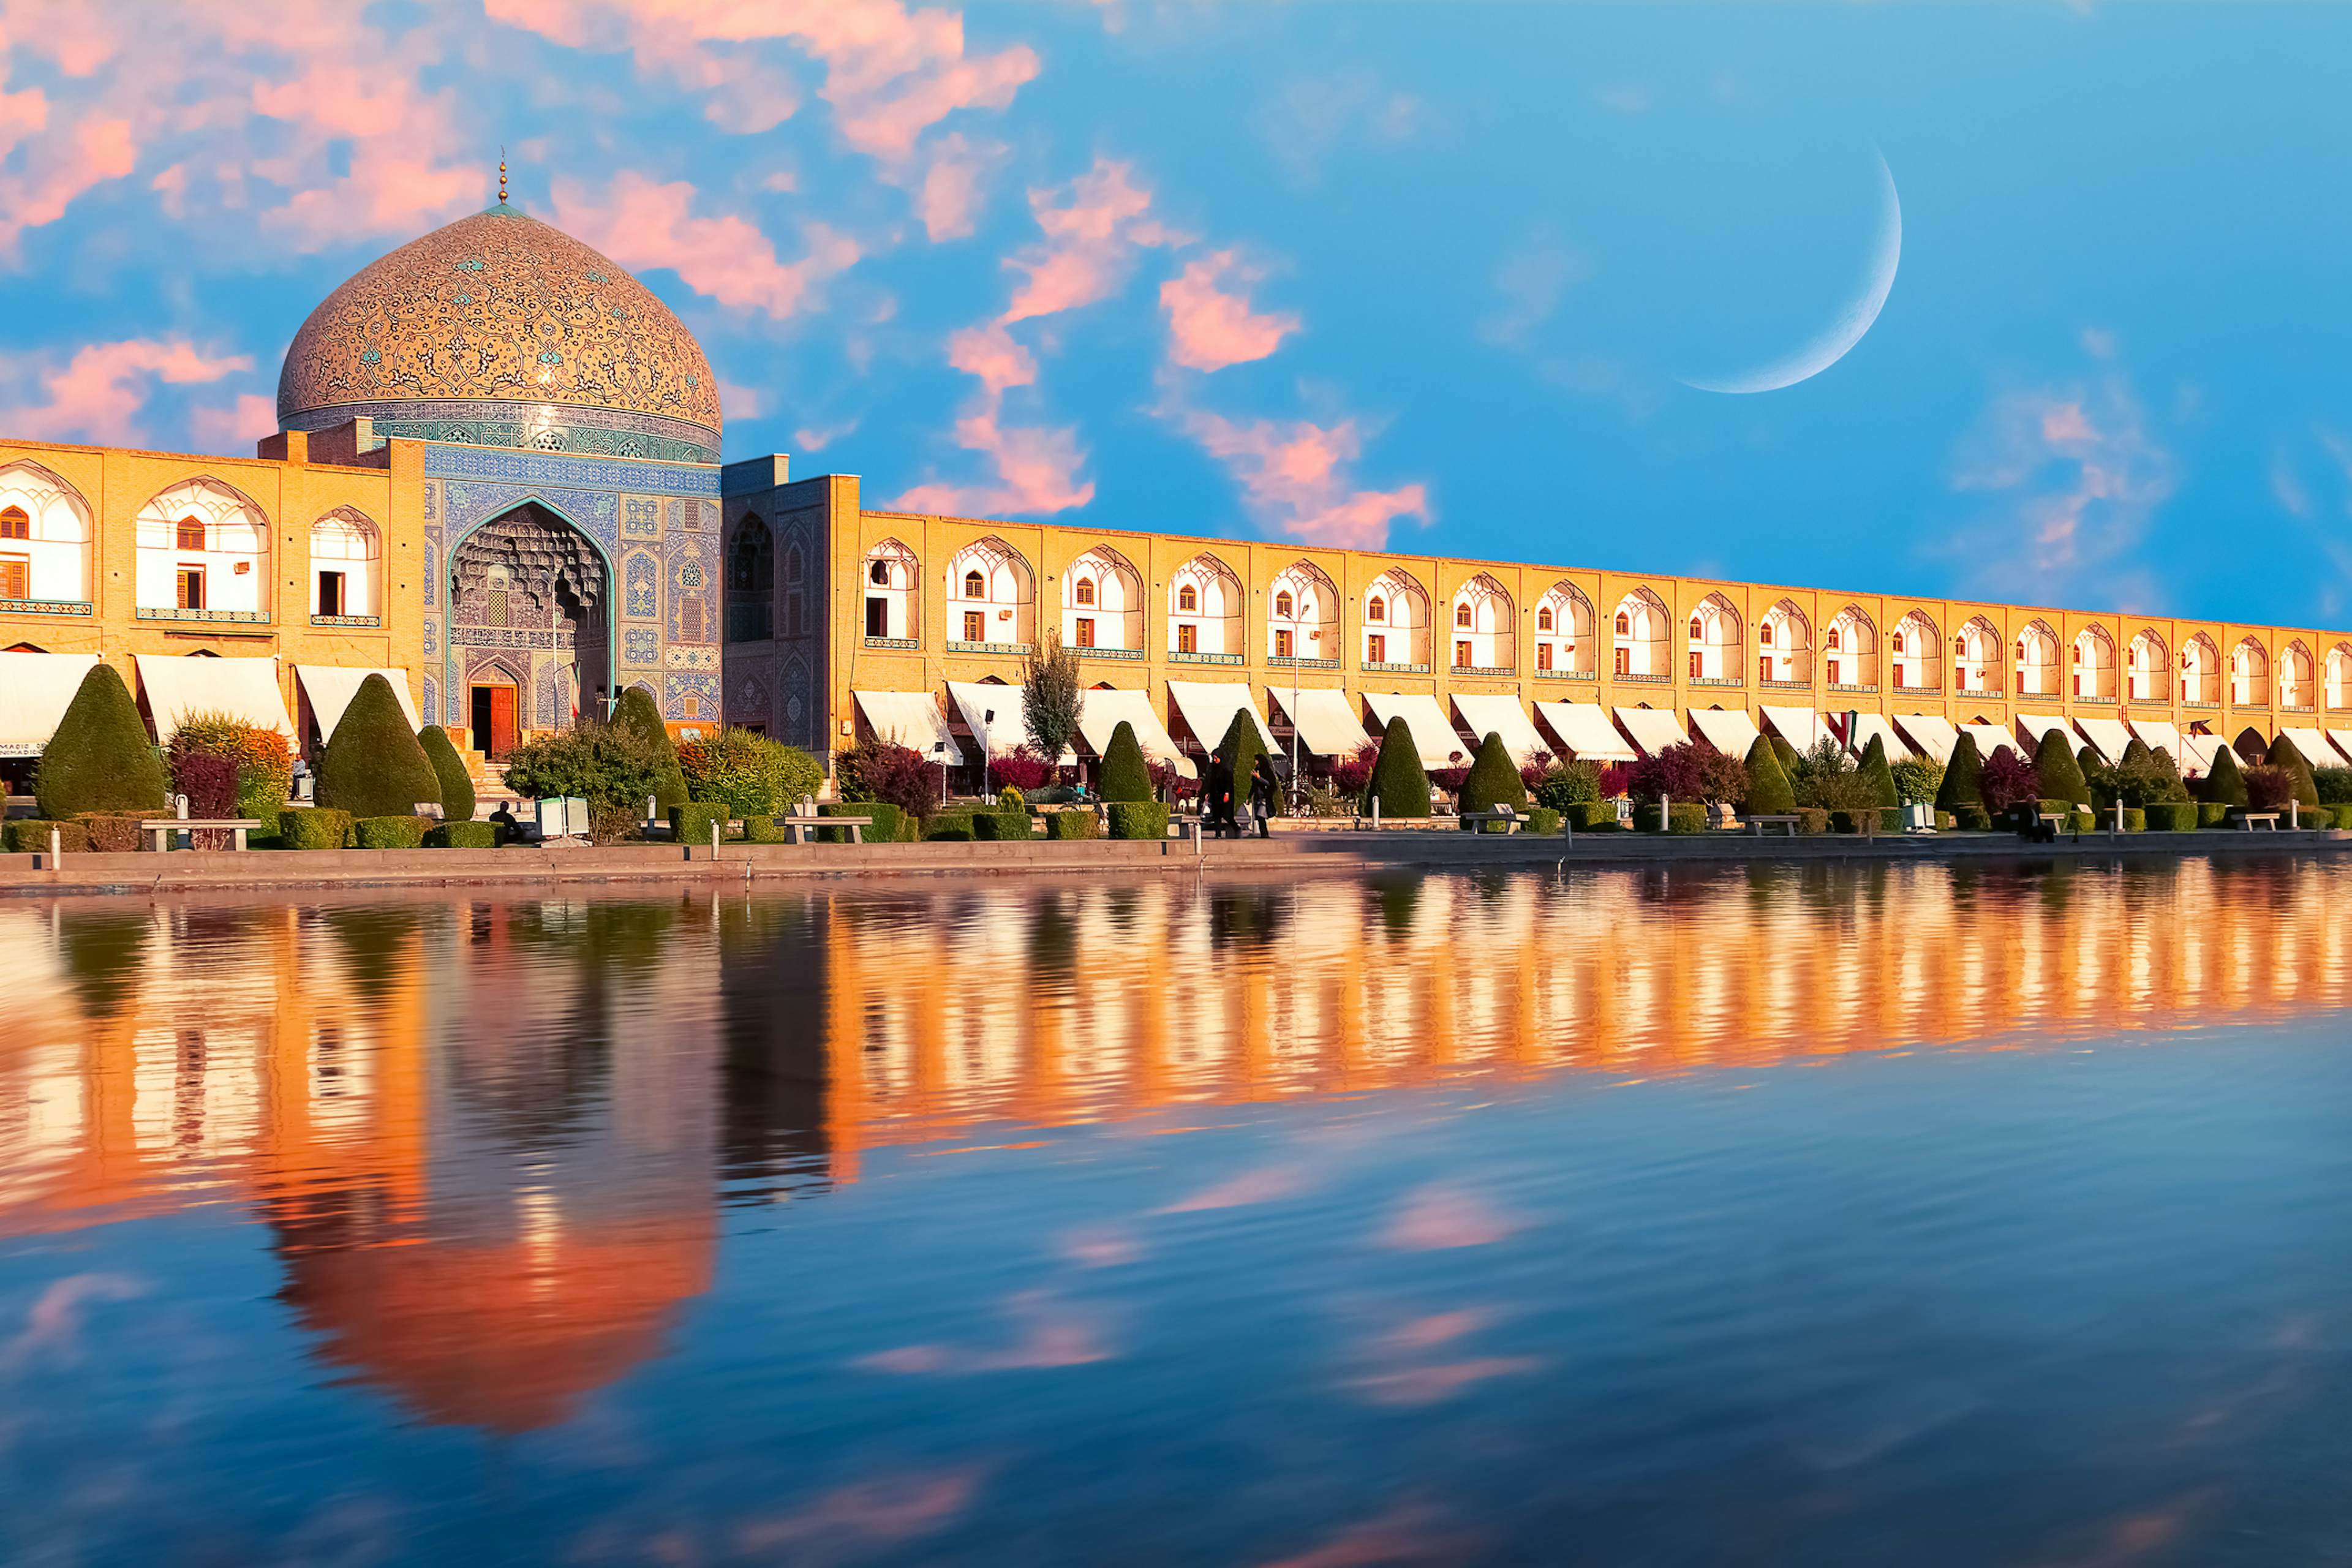 Isfahan image